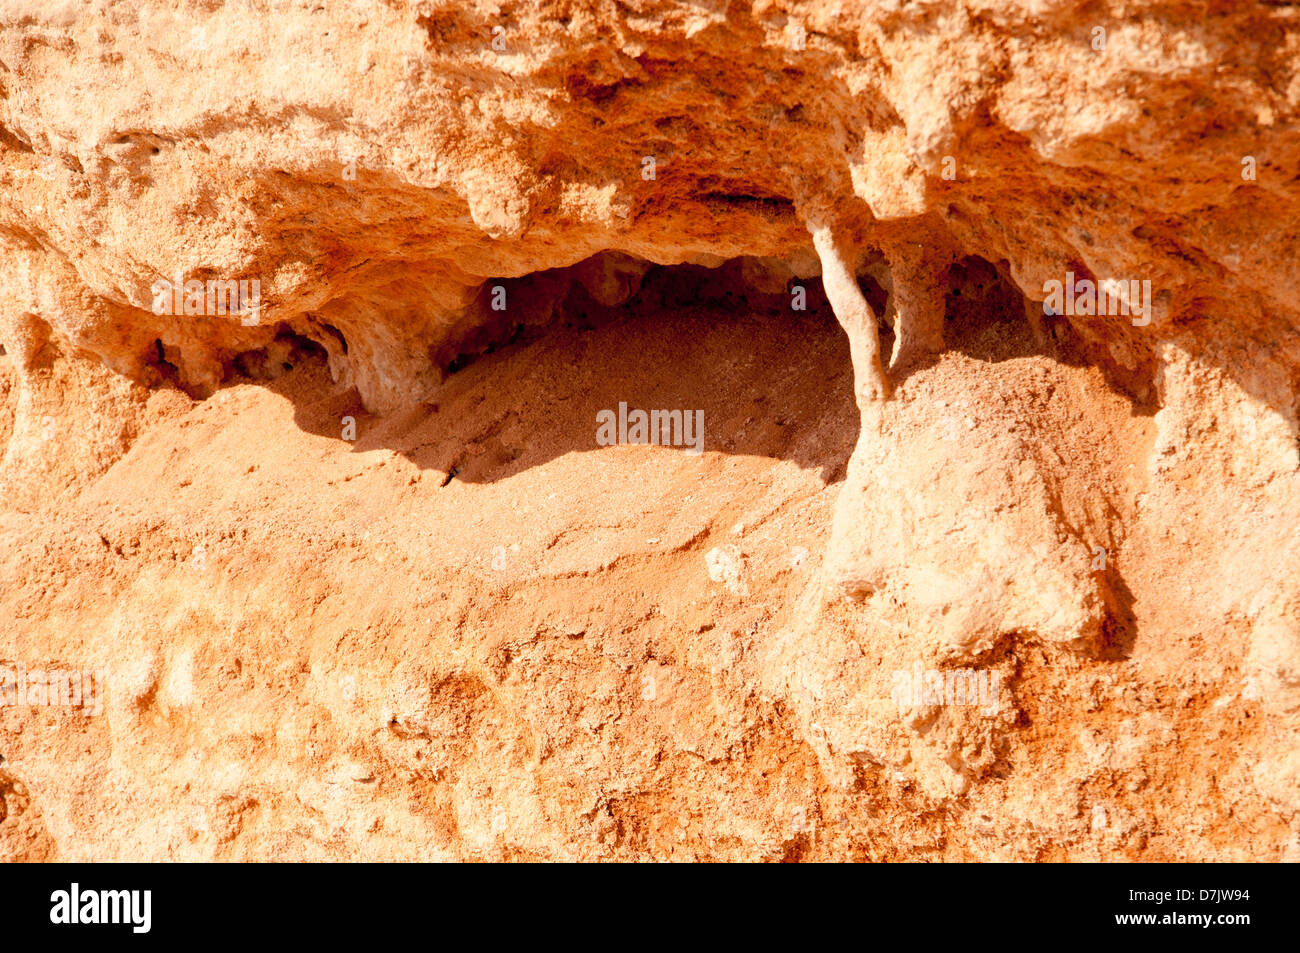 Piccola Grotta Stalattitica e-come feature su un soffice roccia rossa. Foto Stock